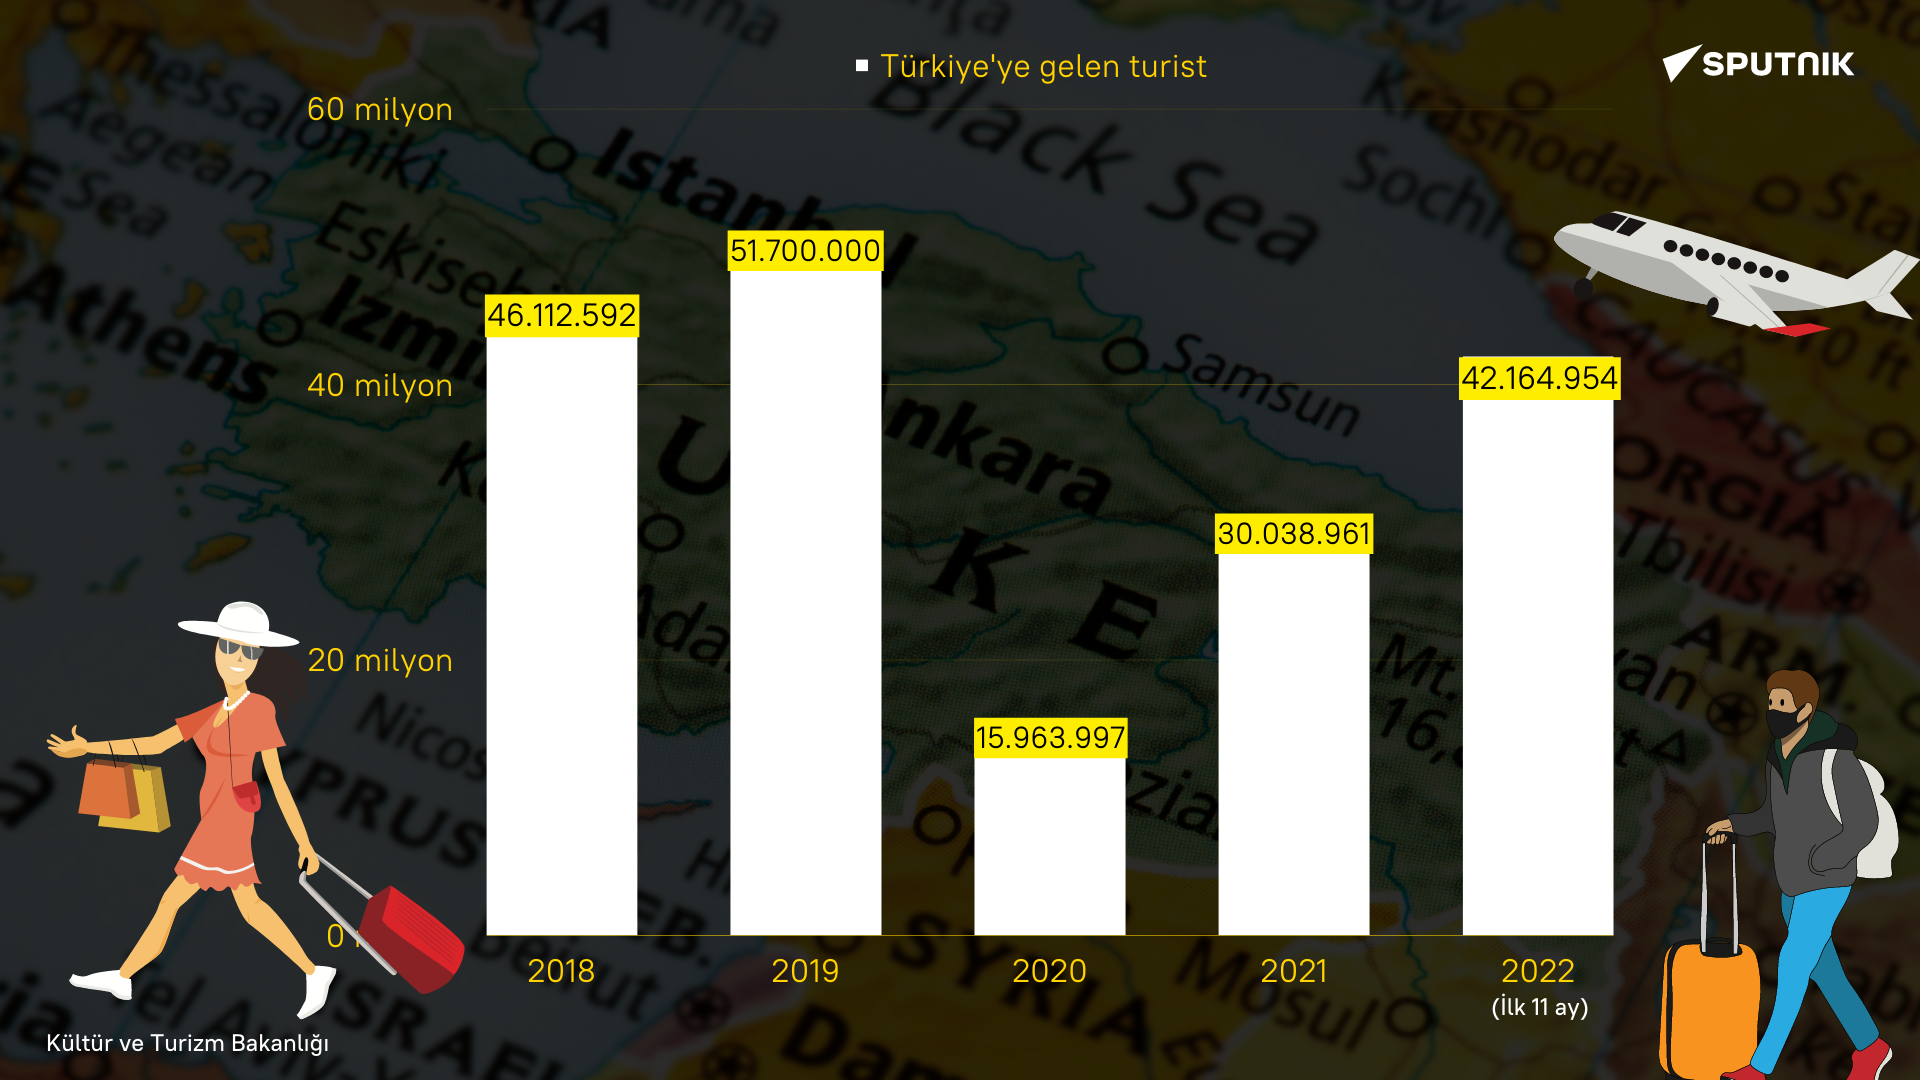 Yıllara göre Türkiye'ye gelen turist sayısı - Sputnik Türkiye, 1920, 26.12.2022